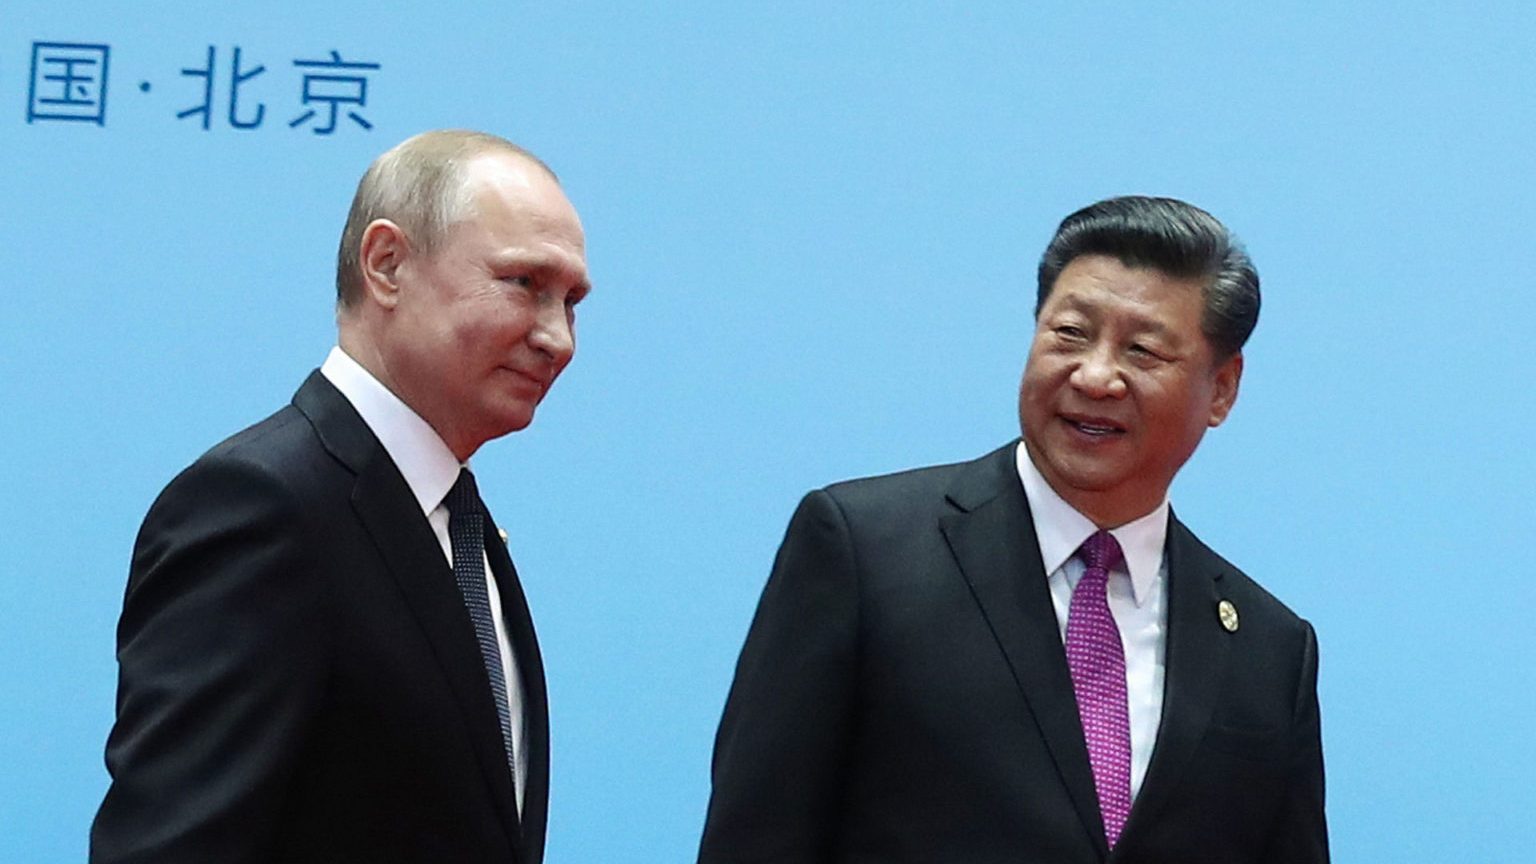 Trong hoàn cảnh Nga đã ngả theo Trung Quốc, Việt Nam khó có thể dựa vào Moscow để cân bằng ảnh hưởng của Trung Quốc như trước. Trong hình, Chủ Tịch Trung Quốc Tập Cận Bình (phải) và Tổng Thống Nga Vladimir Putin trong diễn đàn “Vành Đai và Con Đường” ở Bắc Kinh hôm 27/4/2019. Ảnh: Valery Sharifulin/ Sputnik/ AFP via Getty Images